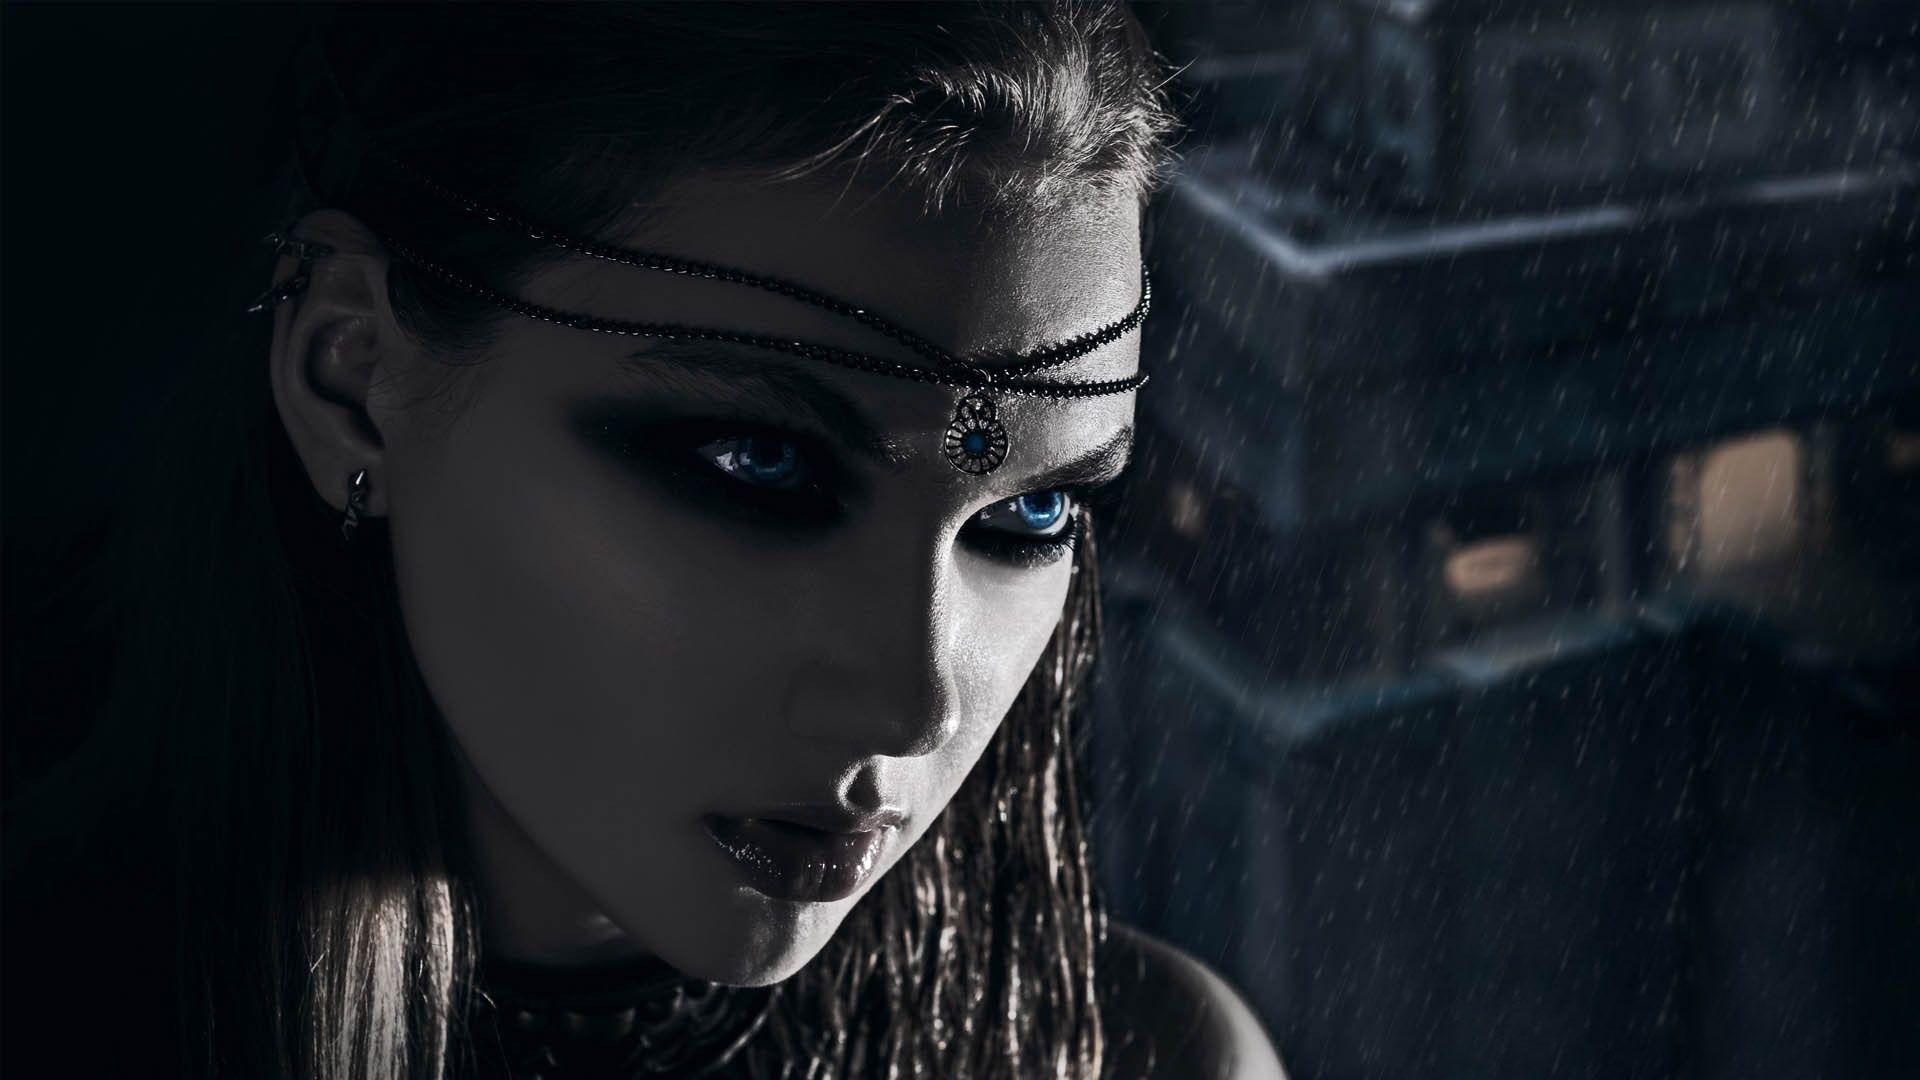 Dark horror fantasy vampire women cg digital art face eyes jewelry